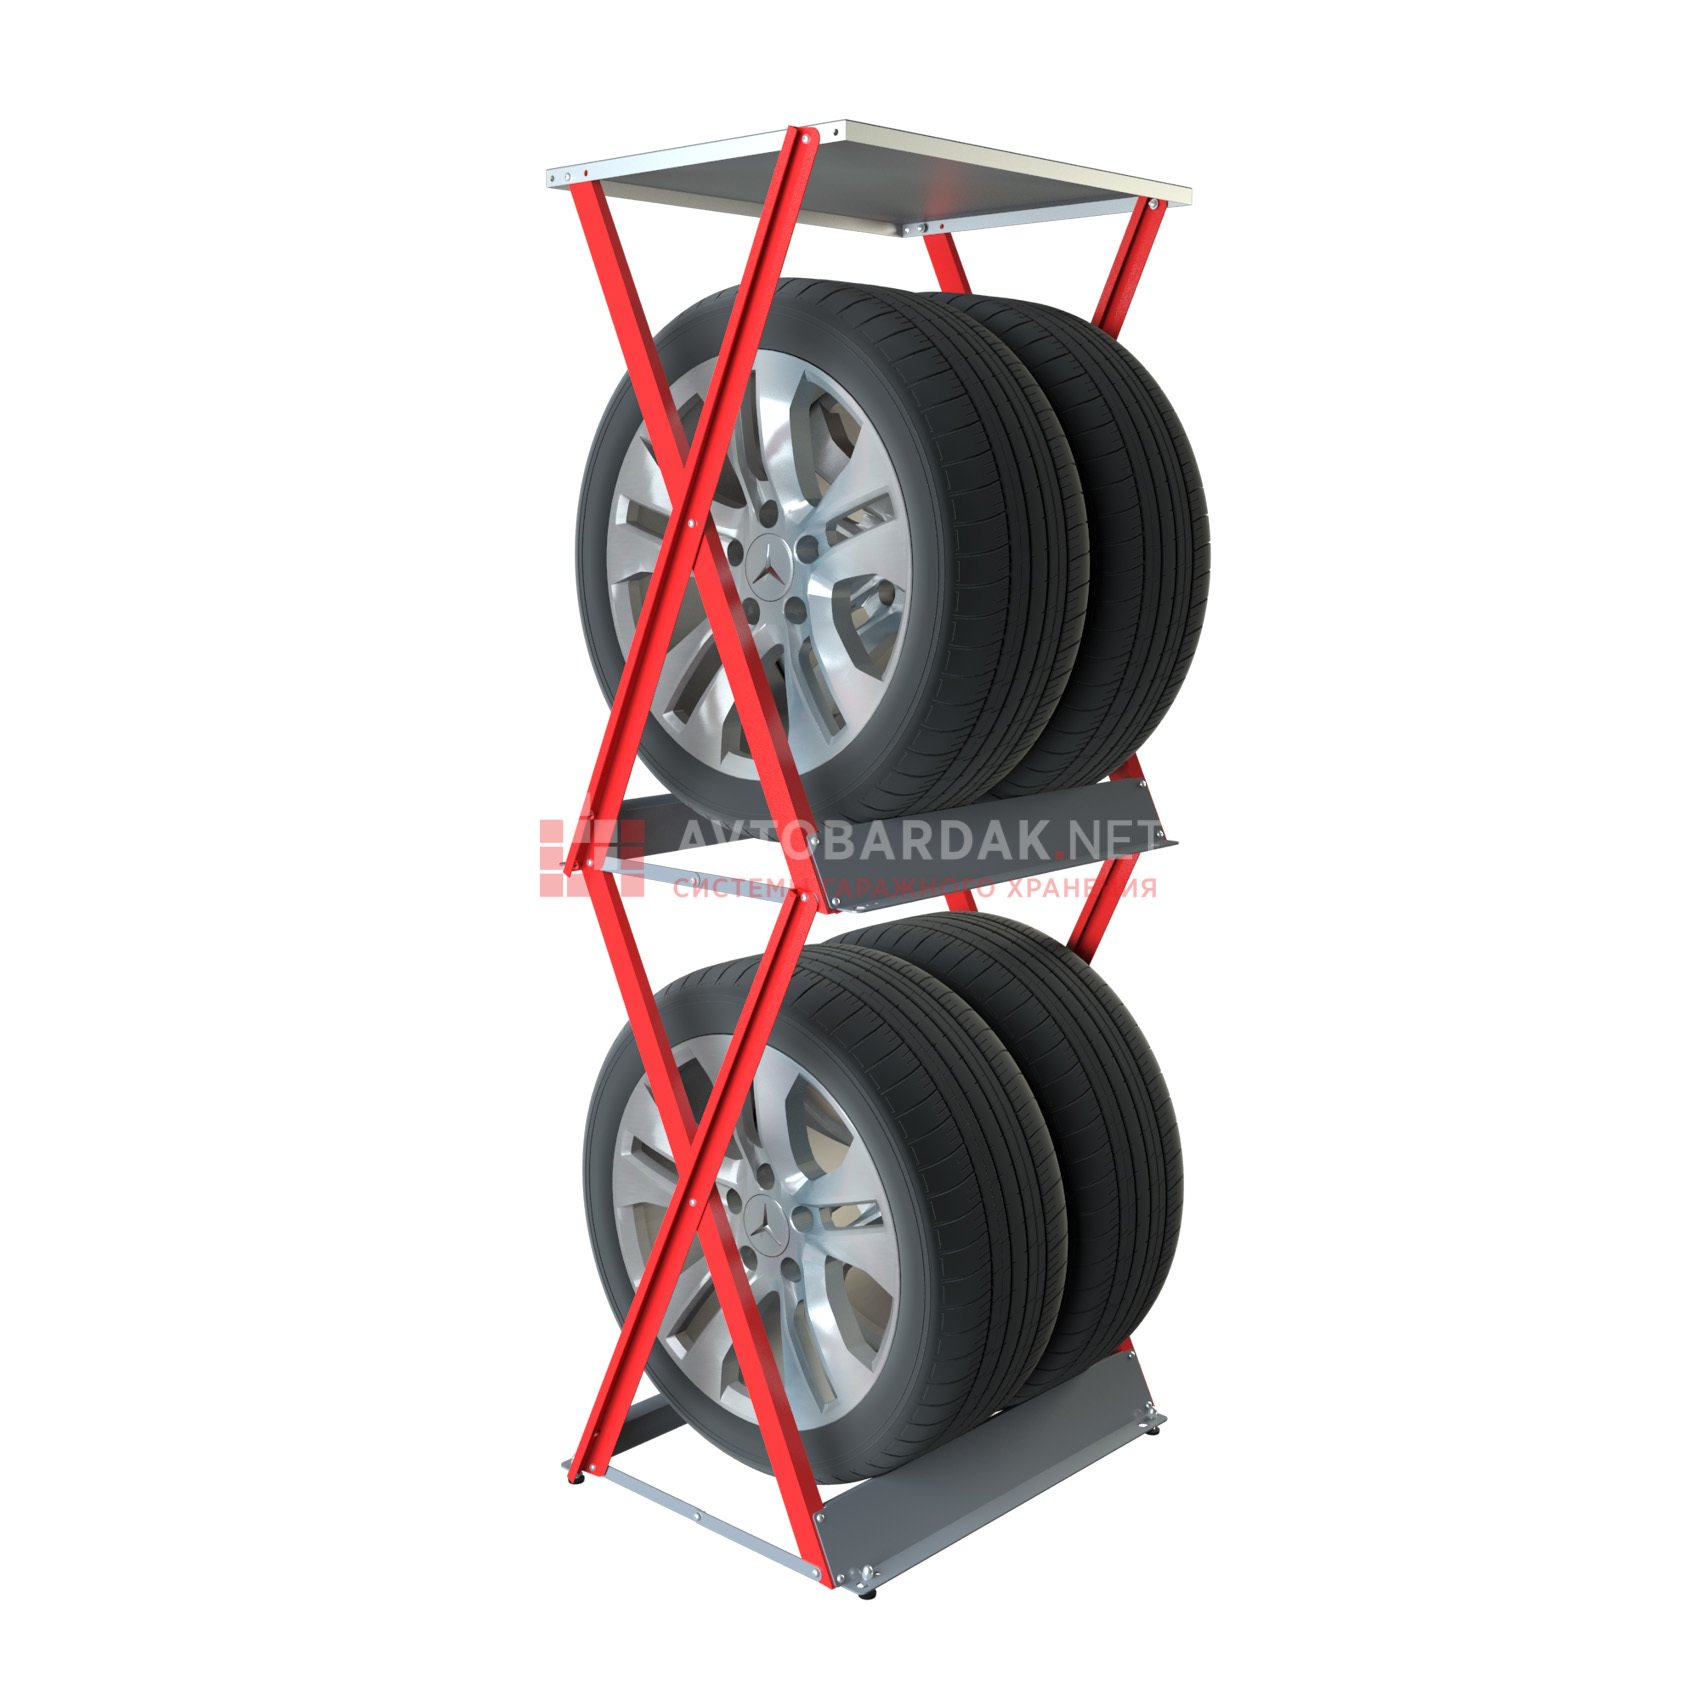 Стеллаж для колес своими руками. Стеллаж для хранения колес KROSSTECH Mini pion-4. Увеличенный стеллаж для колес верт. (До r22, 320мм). Стеллаж для колес ЛФ H-1026. Стеллаж для колес верт. (До r18, ширина до 255).